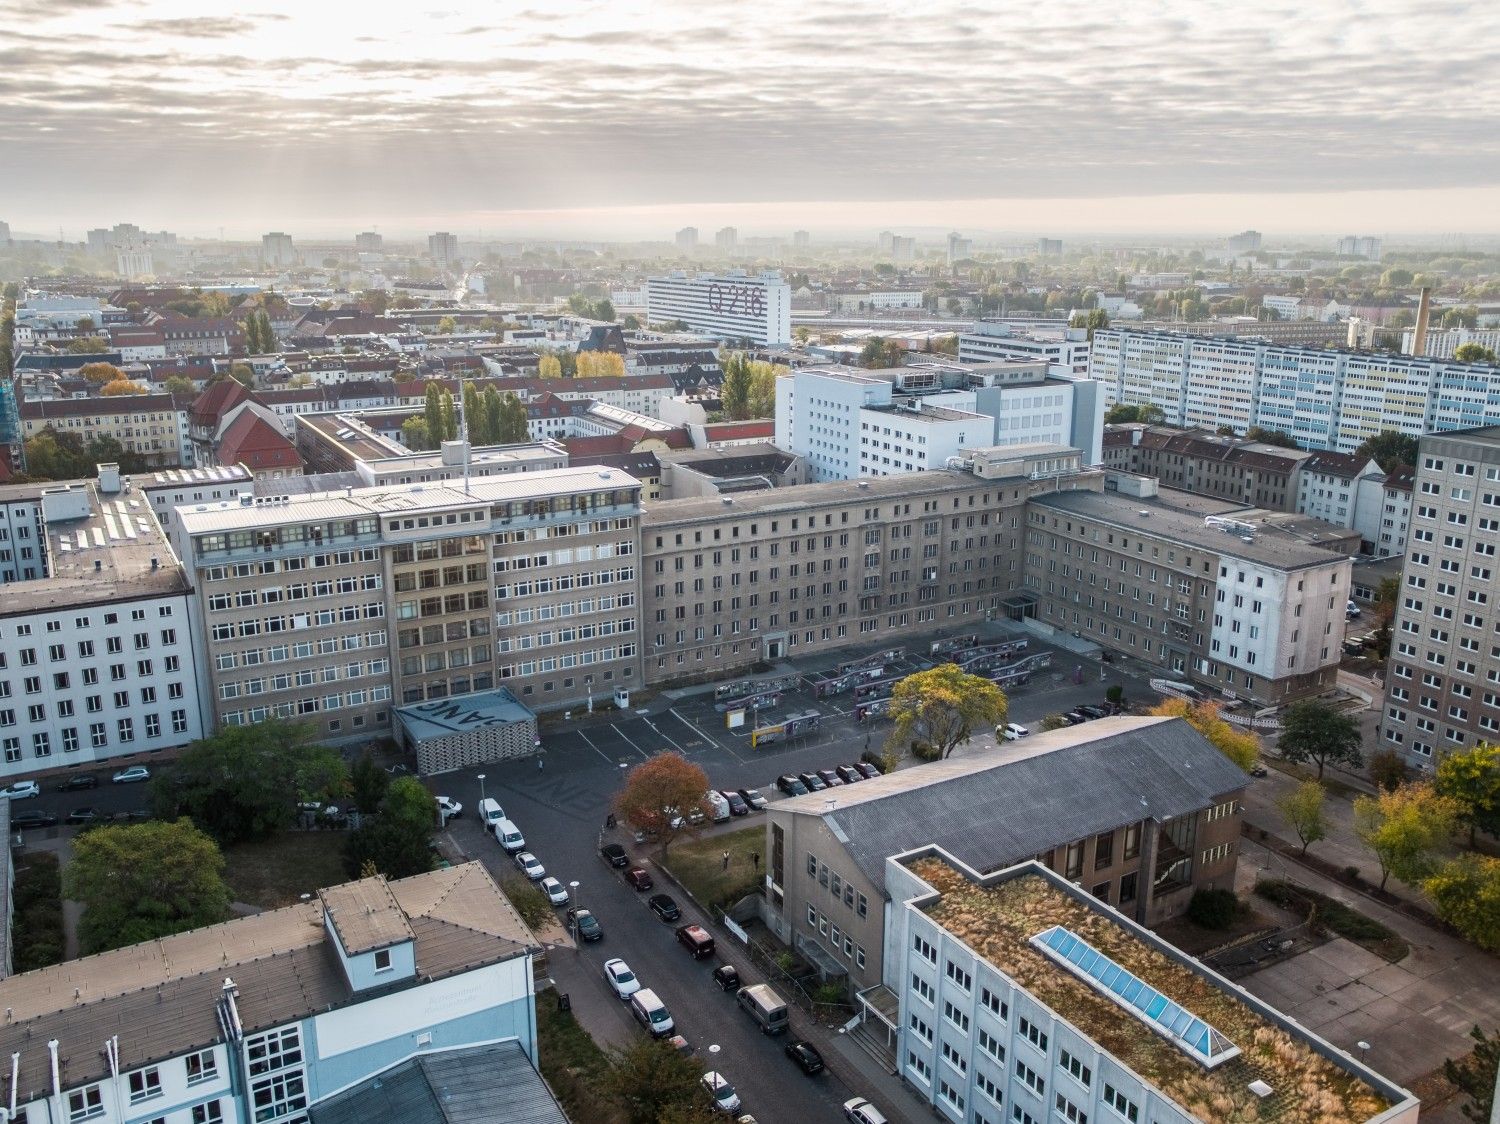 Das Gelände des Campus für Demokratie in Berlin-Lichtenberg